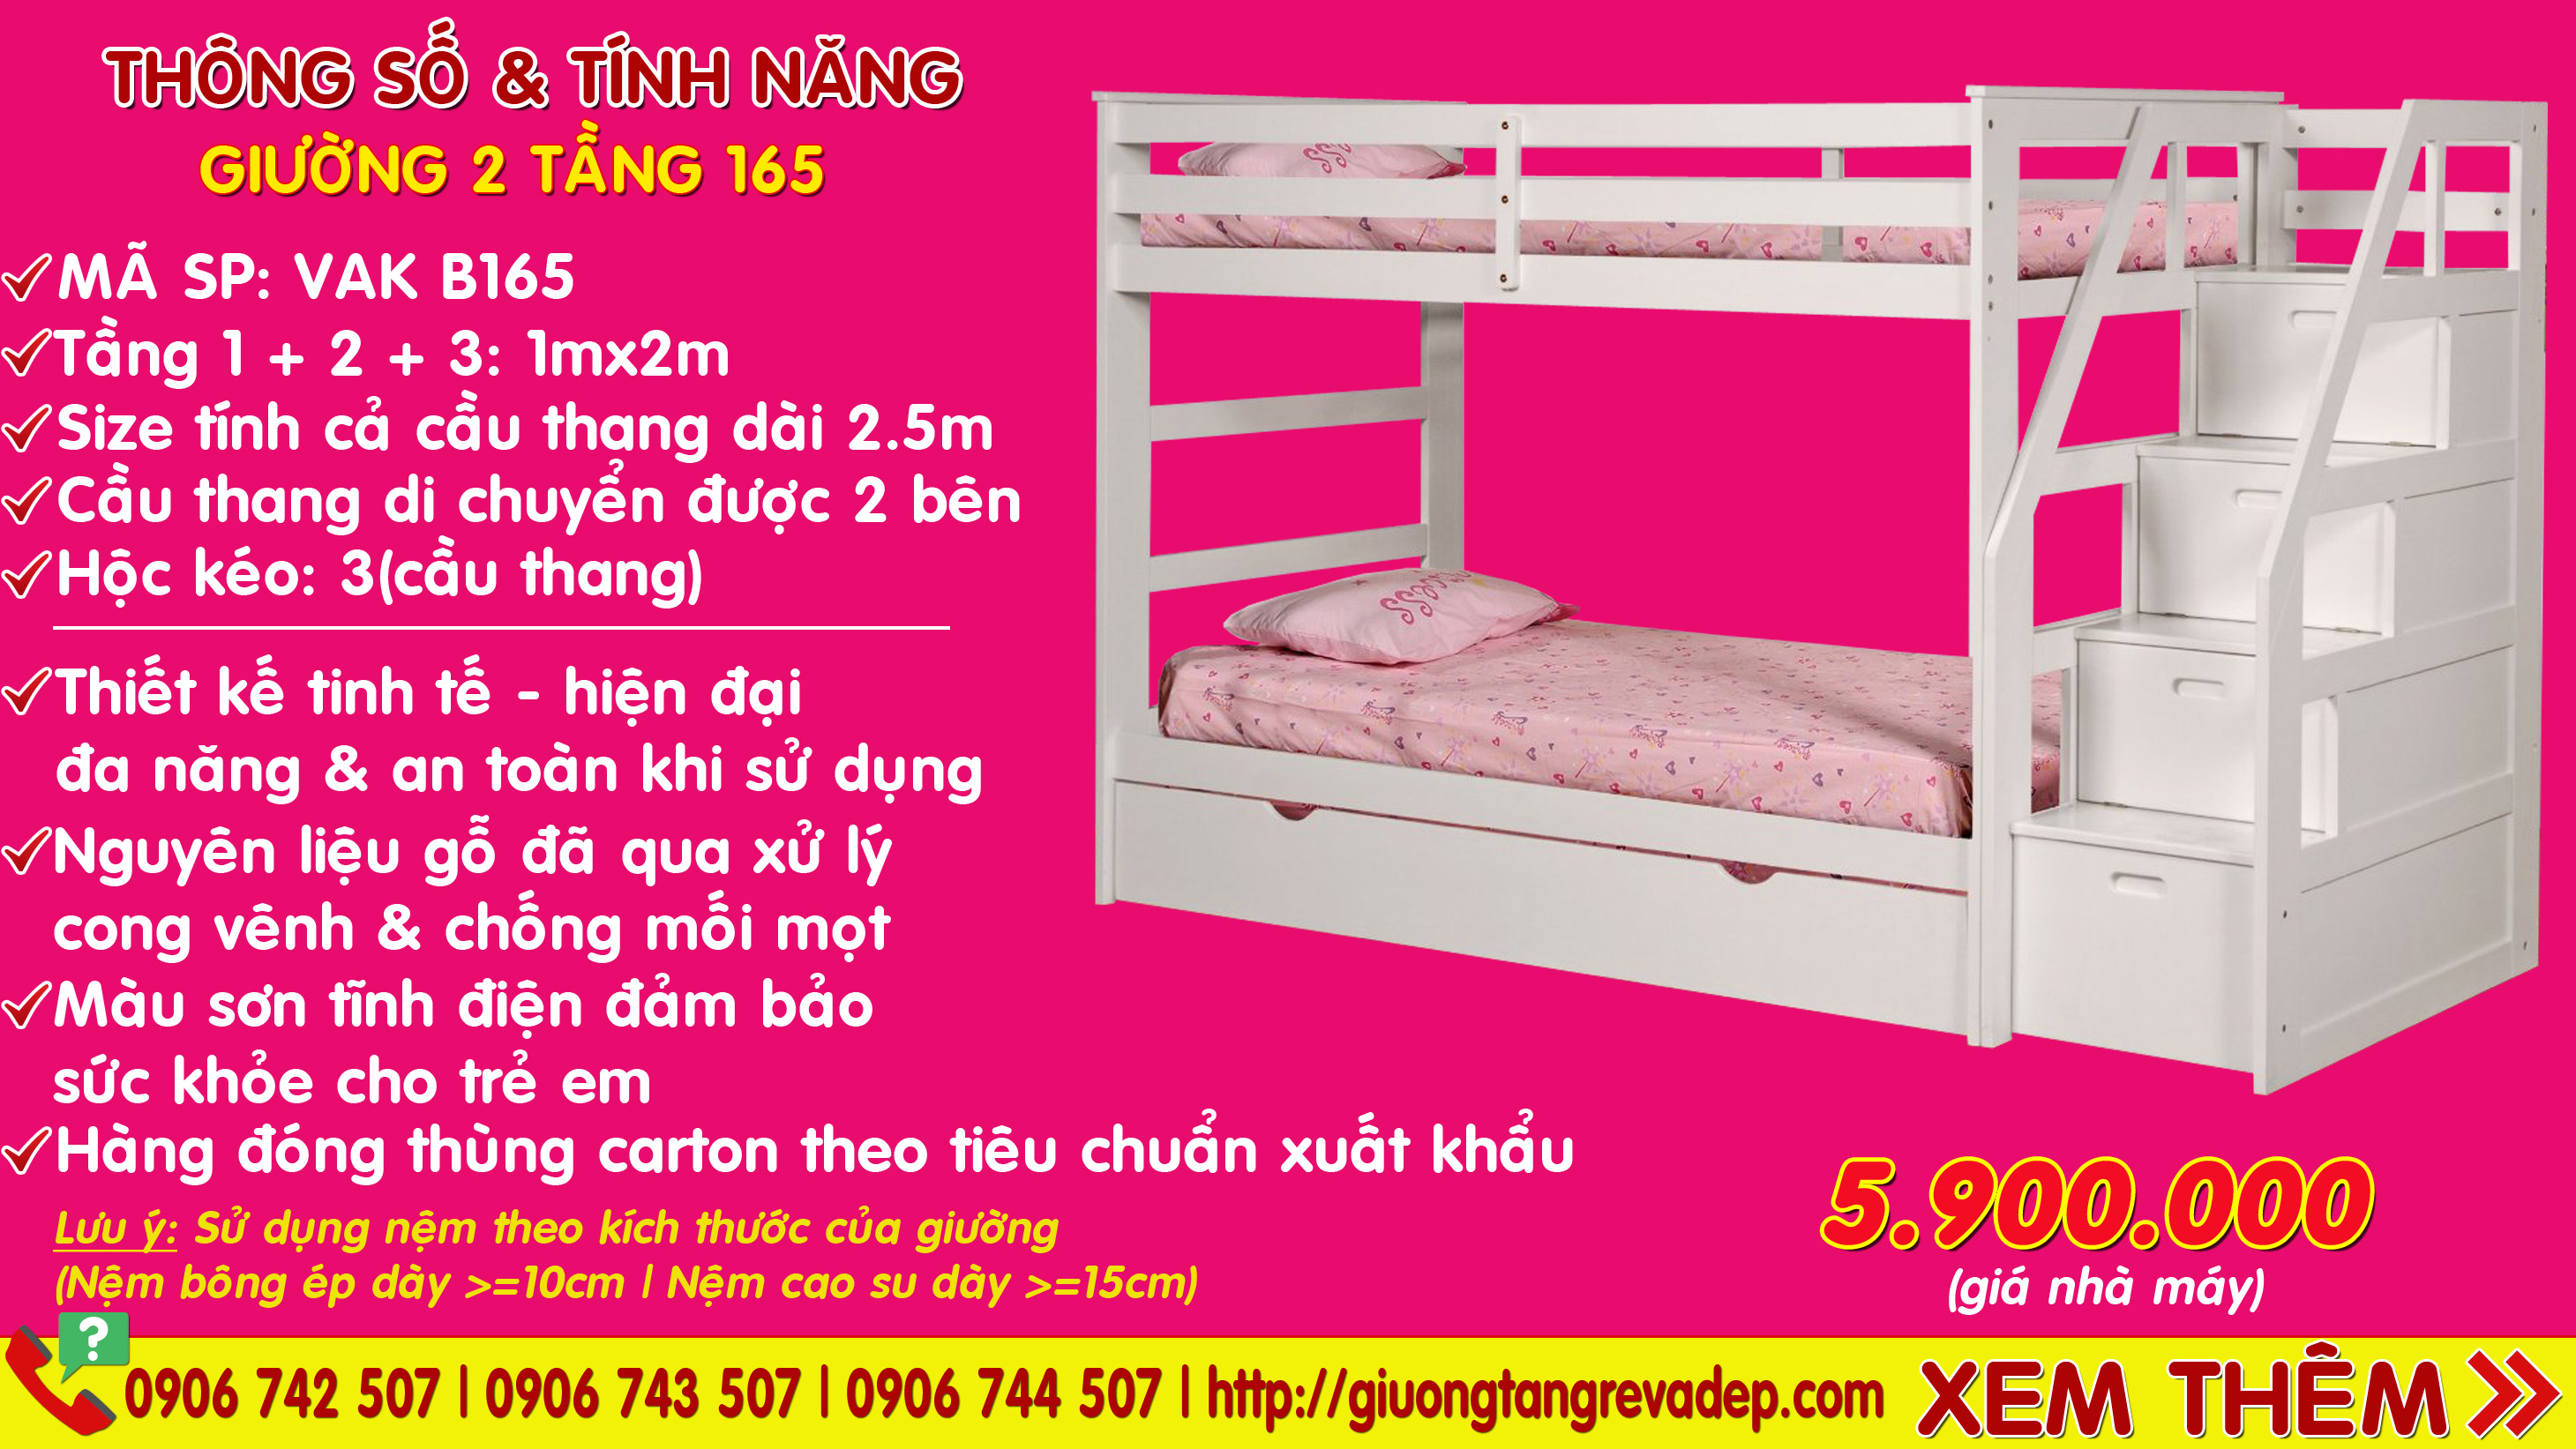 Địa điểm bán giường 3 tầng trẻ em 165 giá rẻ nhất tại QUẬN 4 - TPHCM